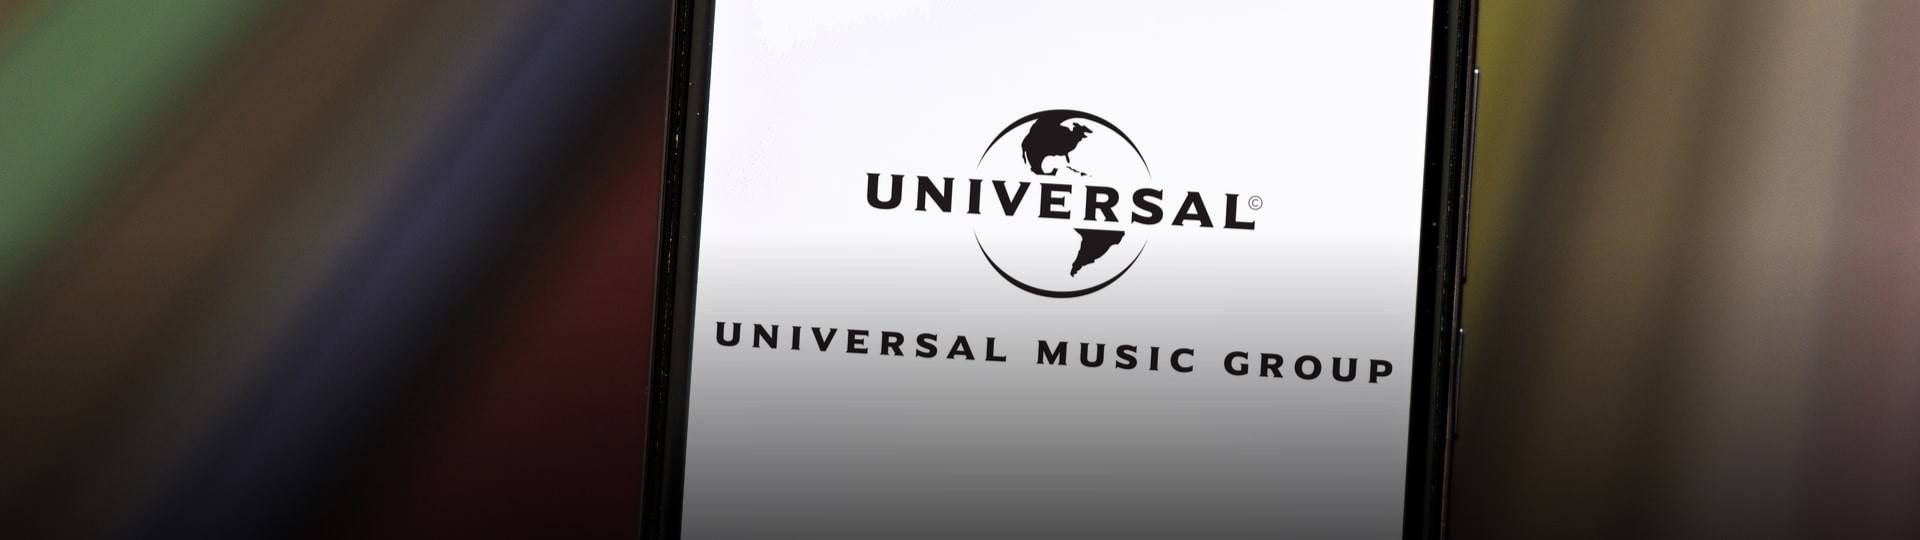 Universal Music vstoupil na burzu s velkým úspěchem